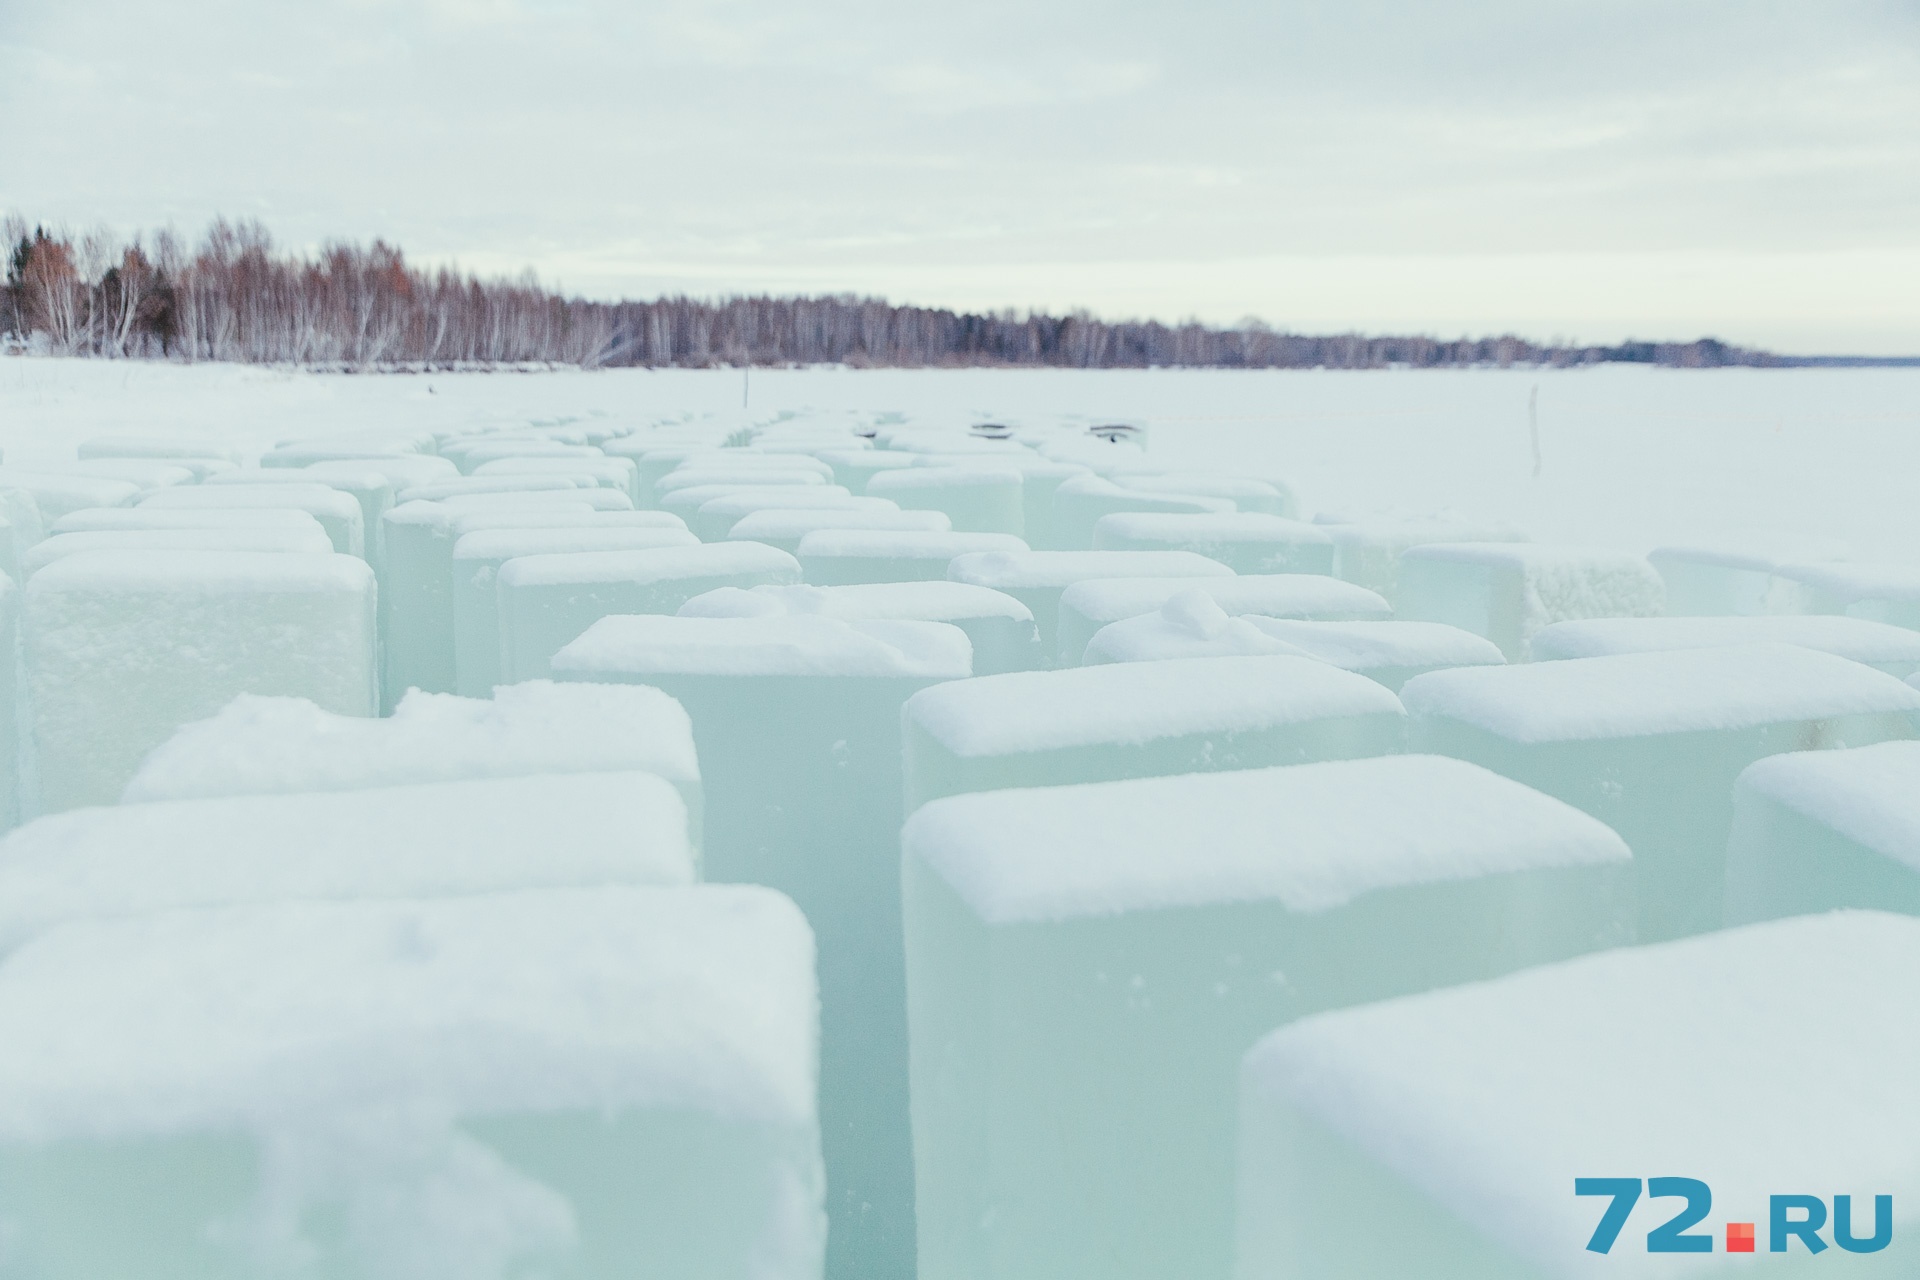 Чтобы возвести ледовый городок на Цветном бульваре, строителям понадобится примерно 150 тонн замерших блоков